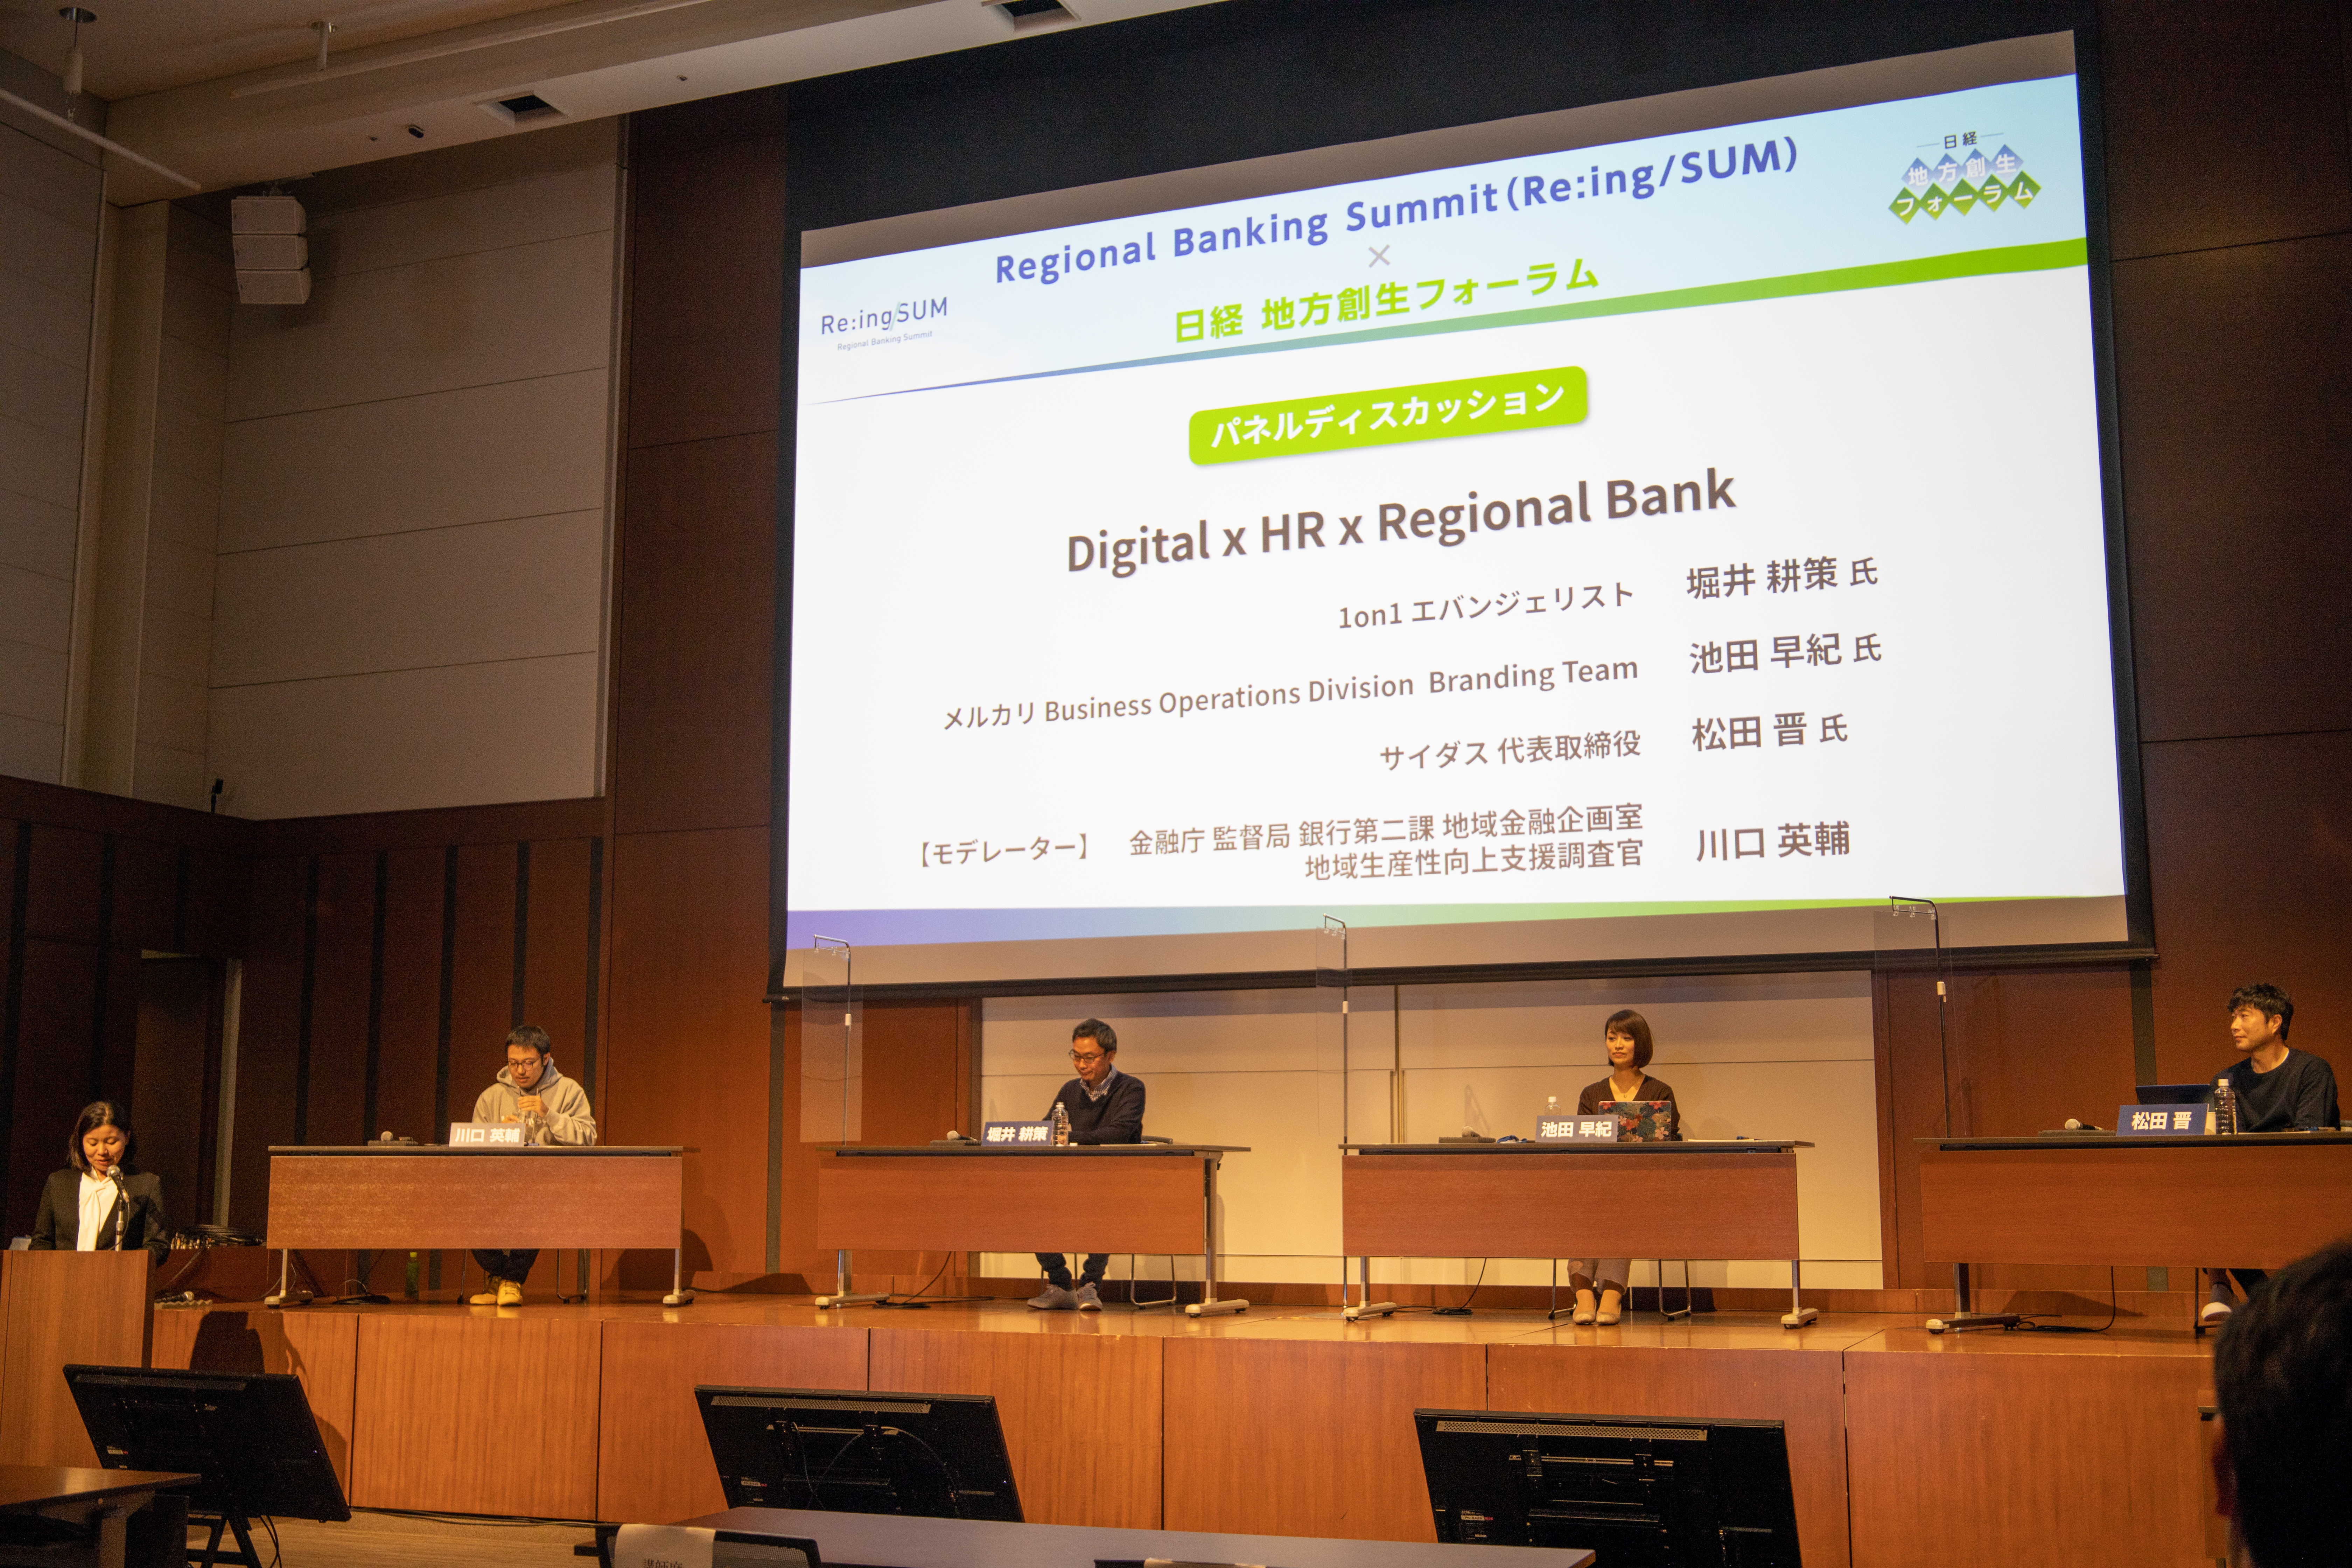 【記事公開】「地域金融とHRの協同が描く未来とは？Digital × HR ×Regional Bankレポート」公開のお知らせ｜株式会社サイダス